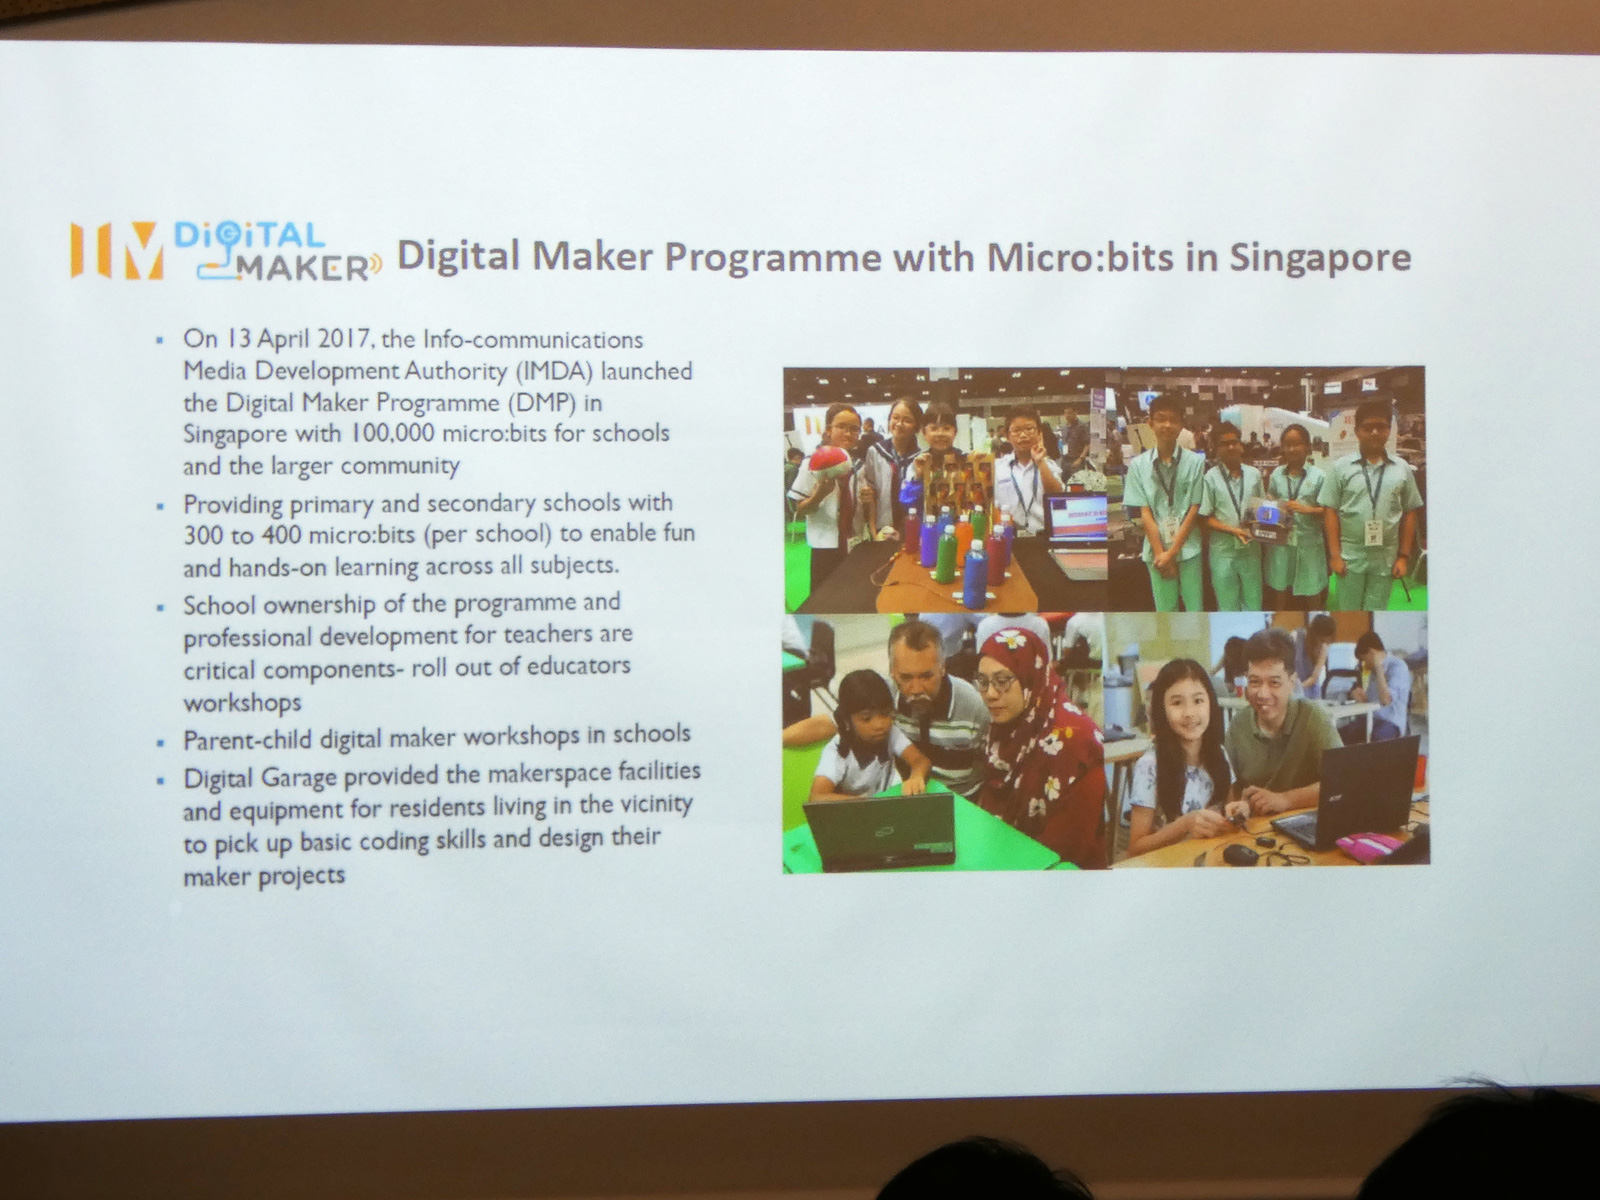 シンガポールのInfo-communications Media Development Authorityが主導したDigital Maker Programme